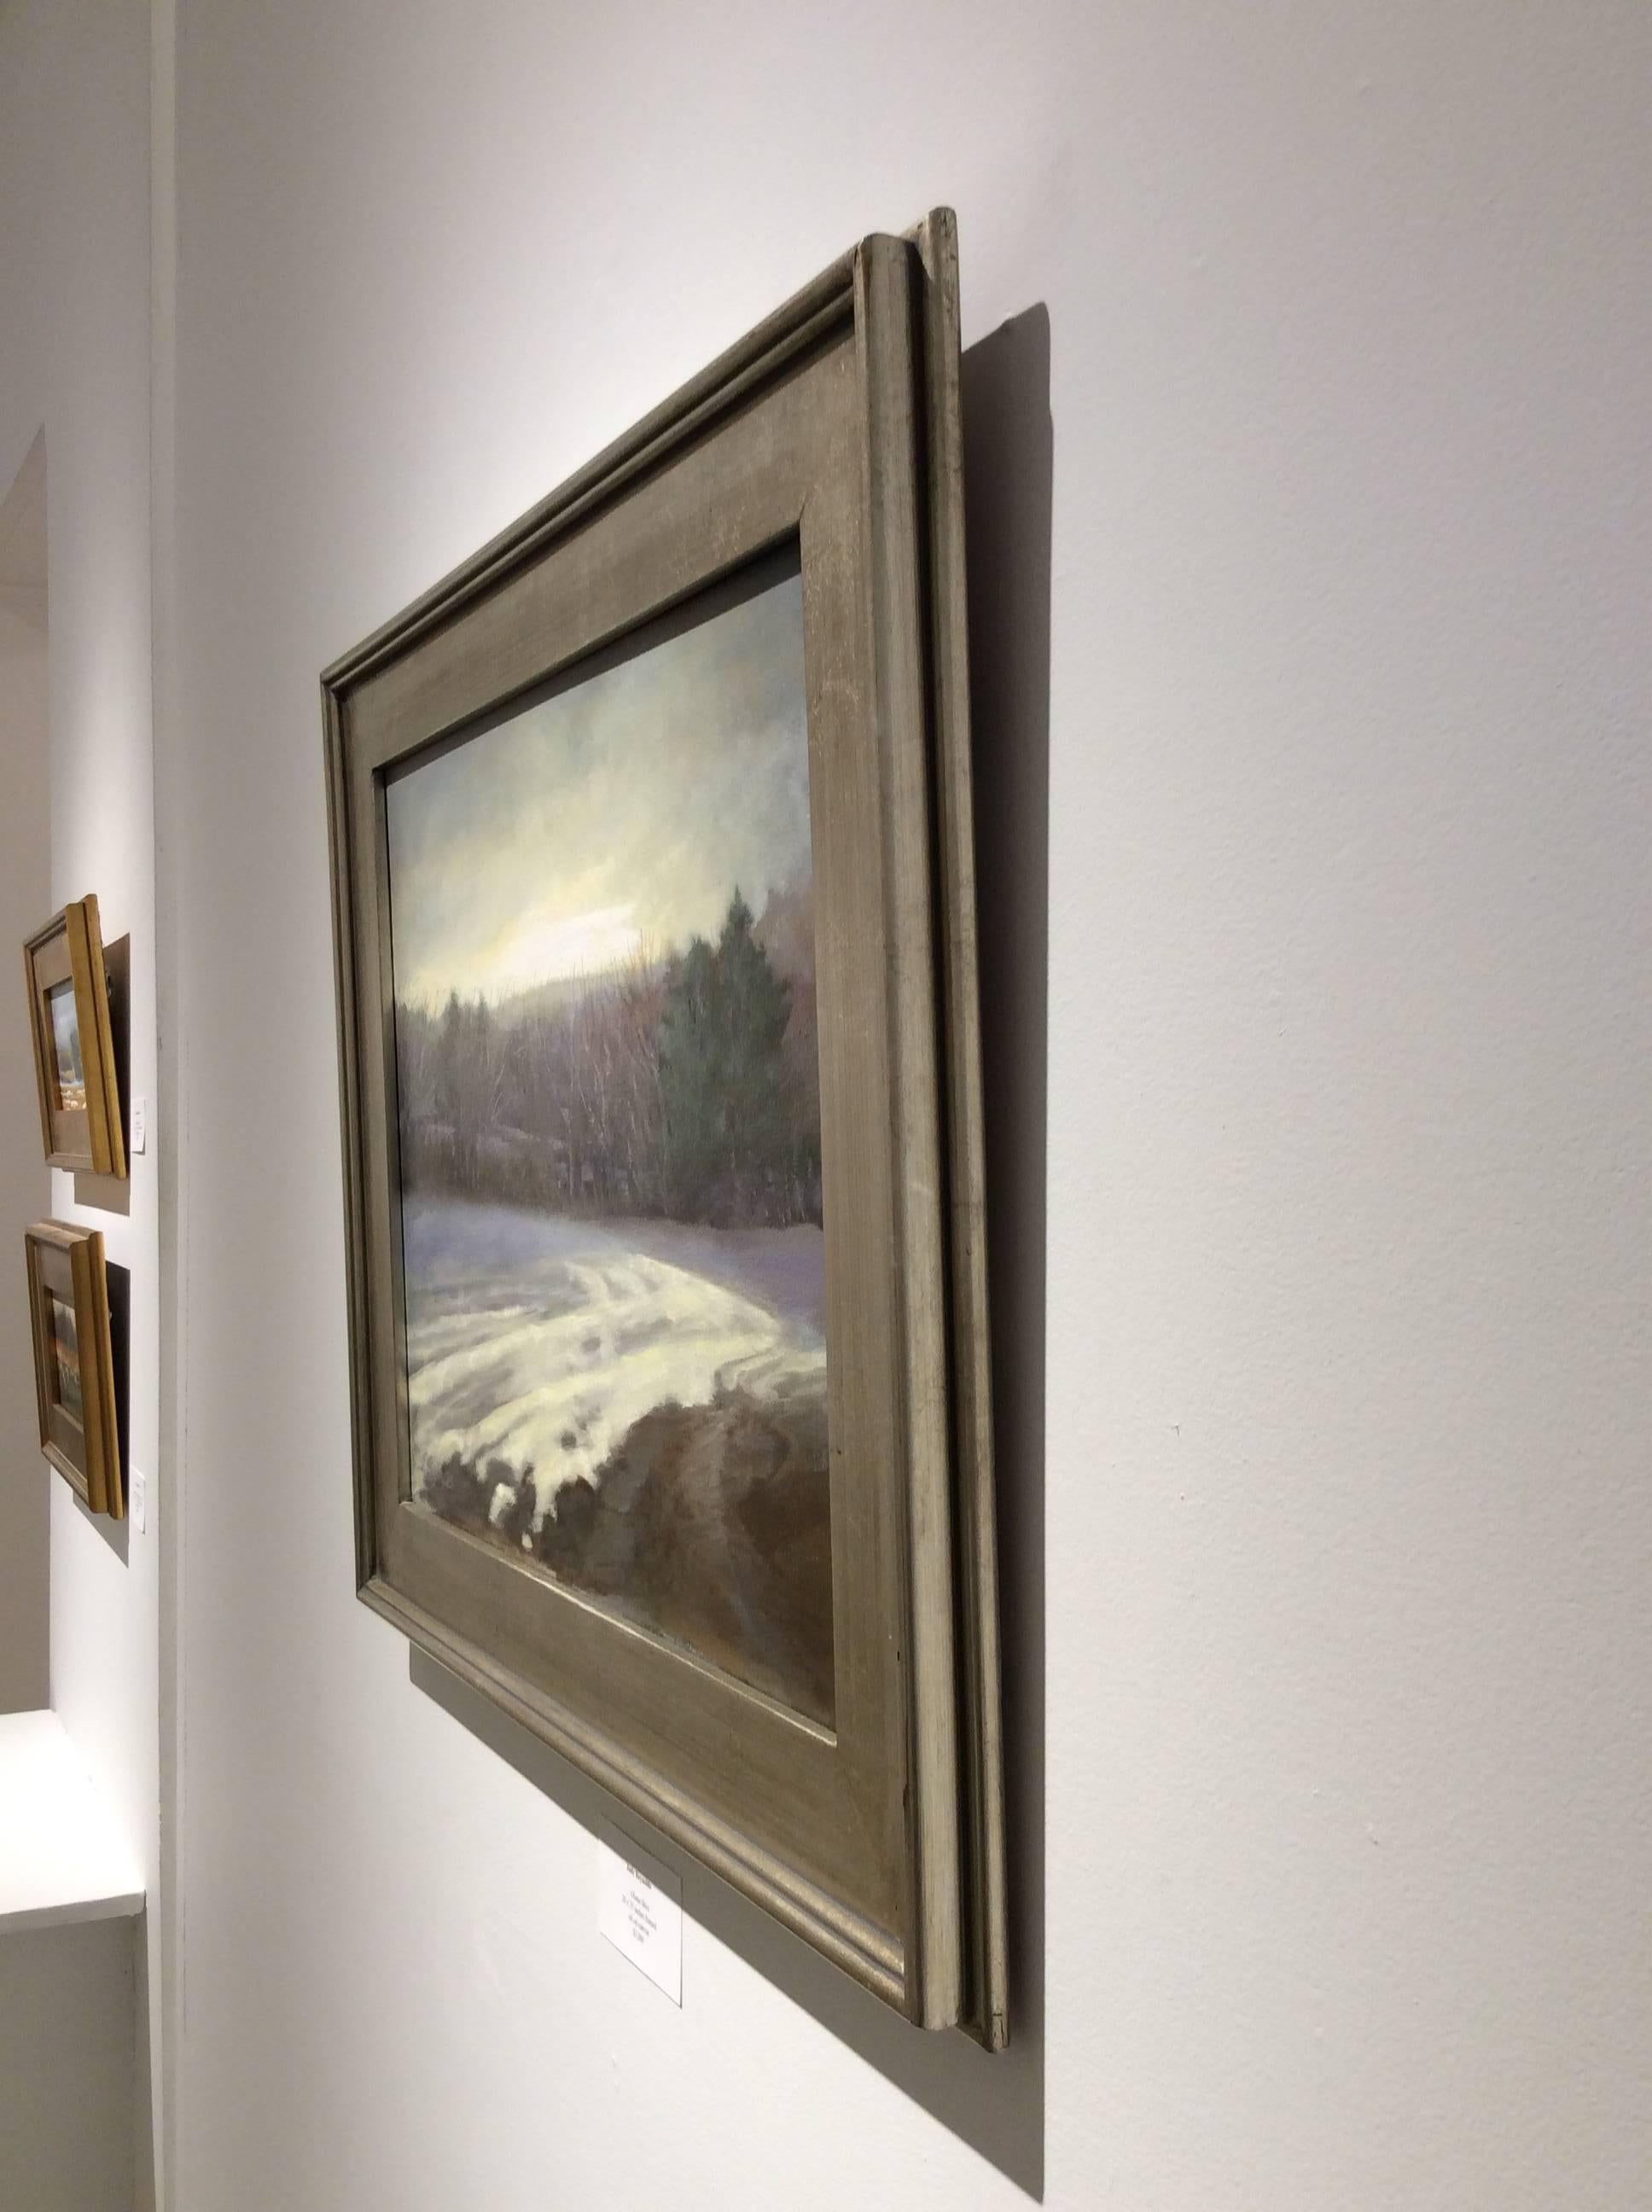 Ce paysage en plein air, peint à l'huile sur toile, a été réalisé par Judy Reynolds, une artiste basée dans la vallée de l'Hudson. La composition présente un champ de maïs stérile en hiver, recouvert d'une couche de neige d'un blanc crémeux. Avec